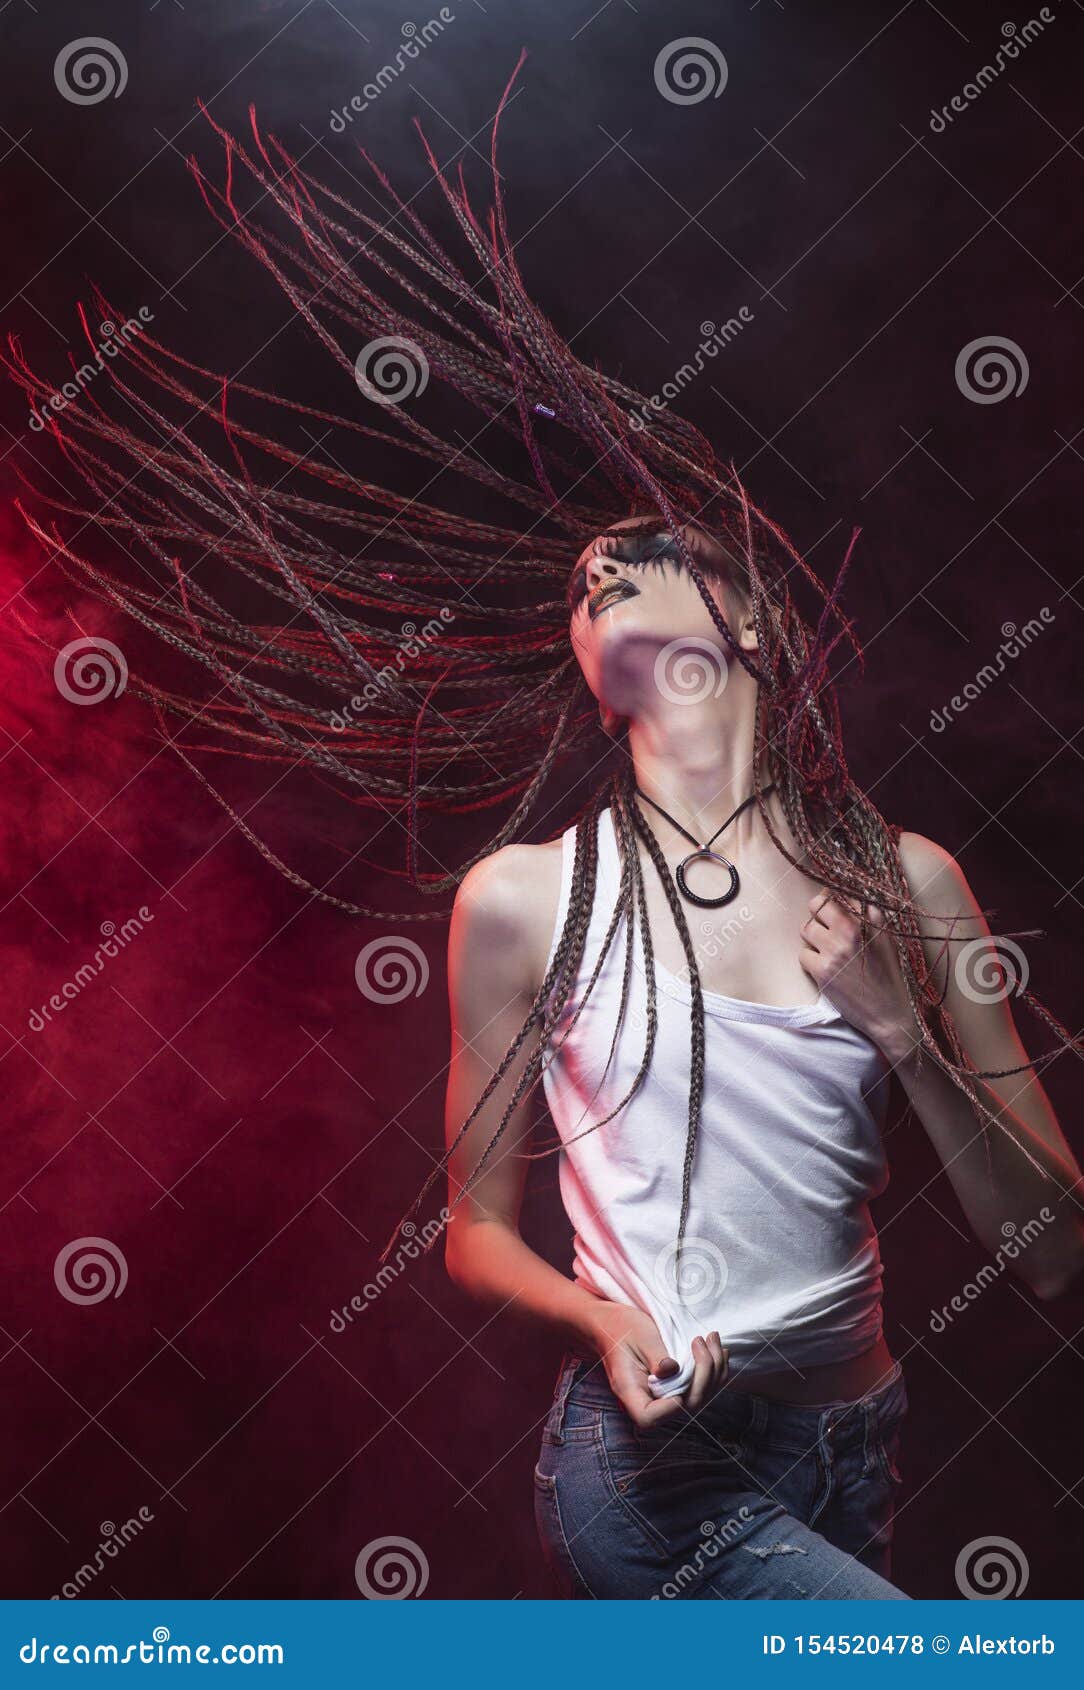 Emotionales Foto eines schönen dünnen Mädchens mit kreativem Make-up und einer Frisur von cornrows, tragendes weißes T-Shirt, tanzende Wellen ihre Borten im roten Rauche Begrifflich, Handels, Entwurf annoncierend